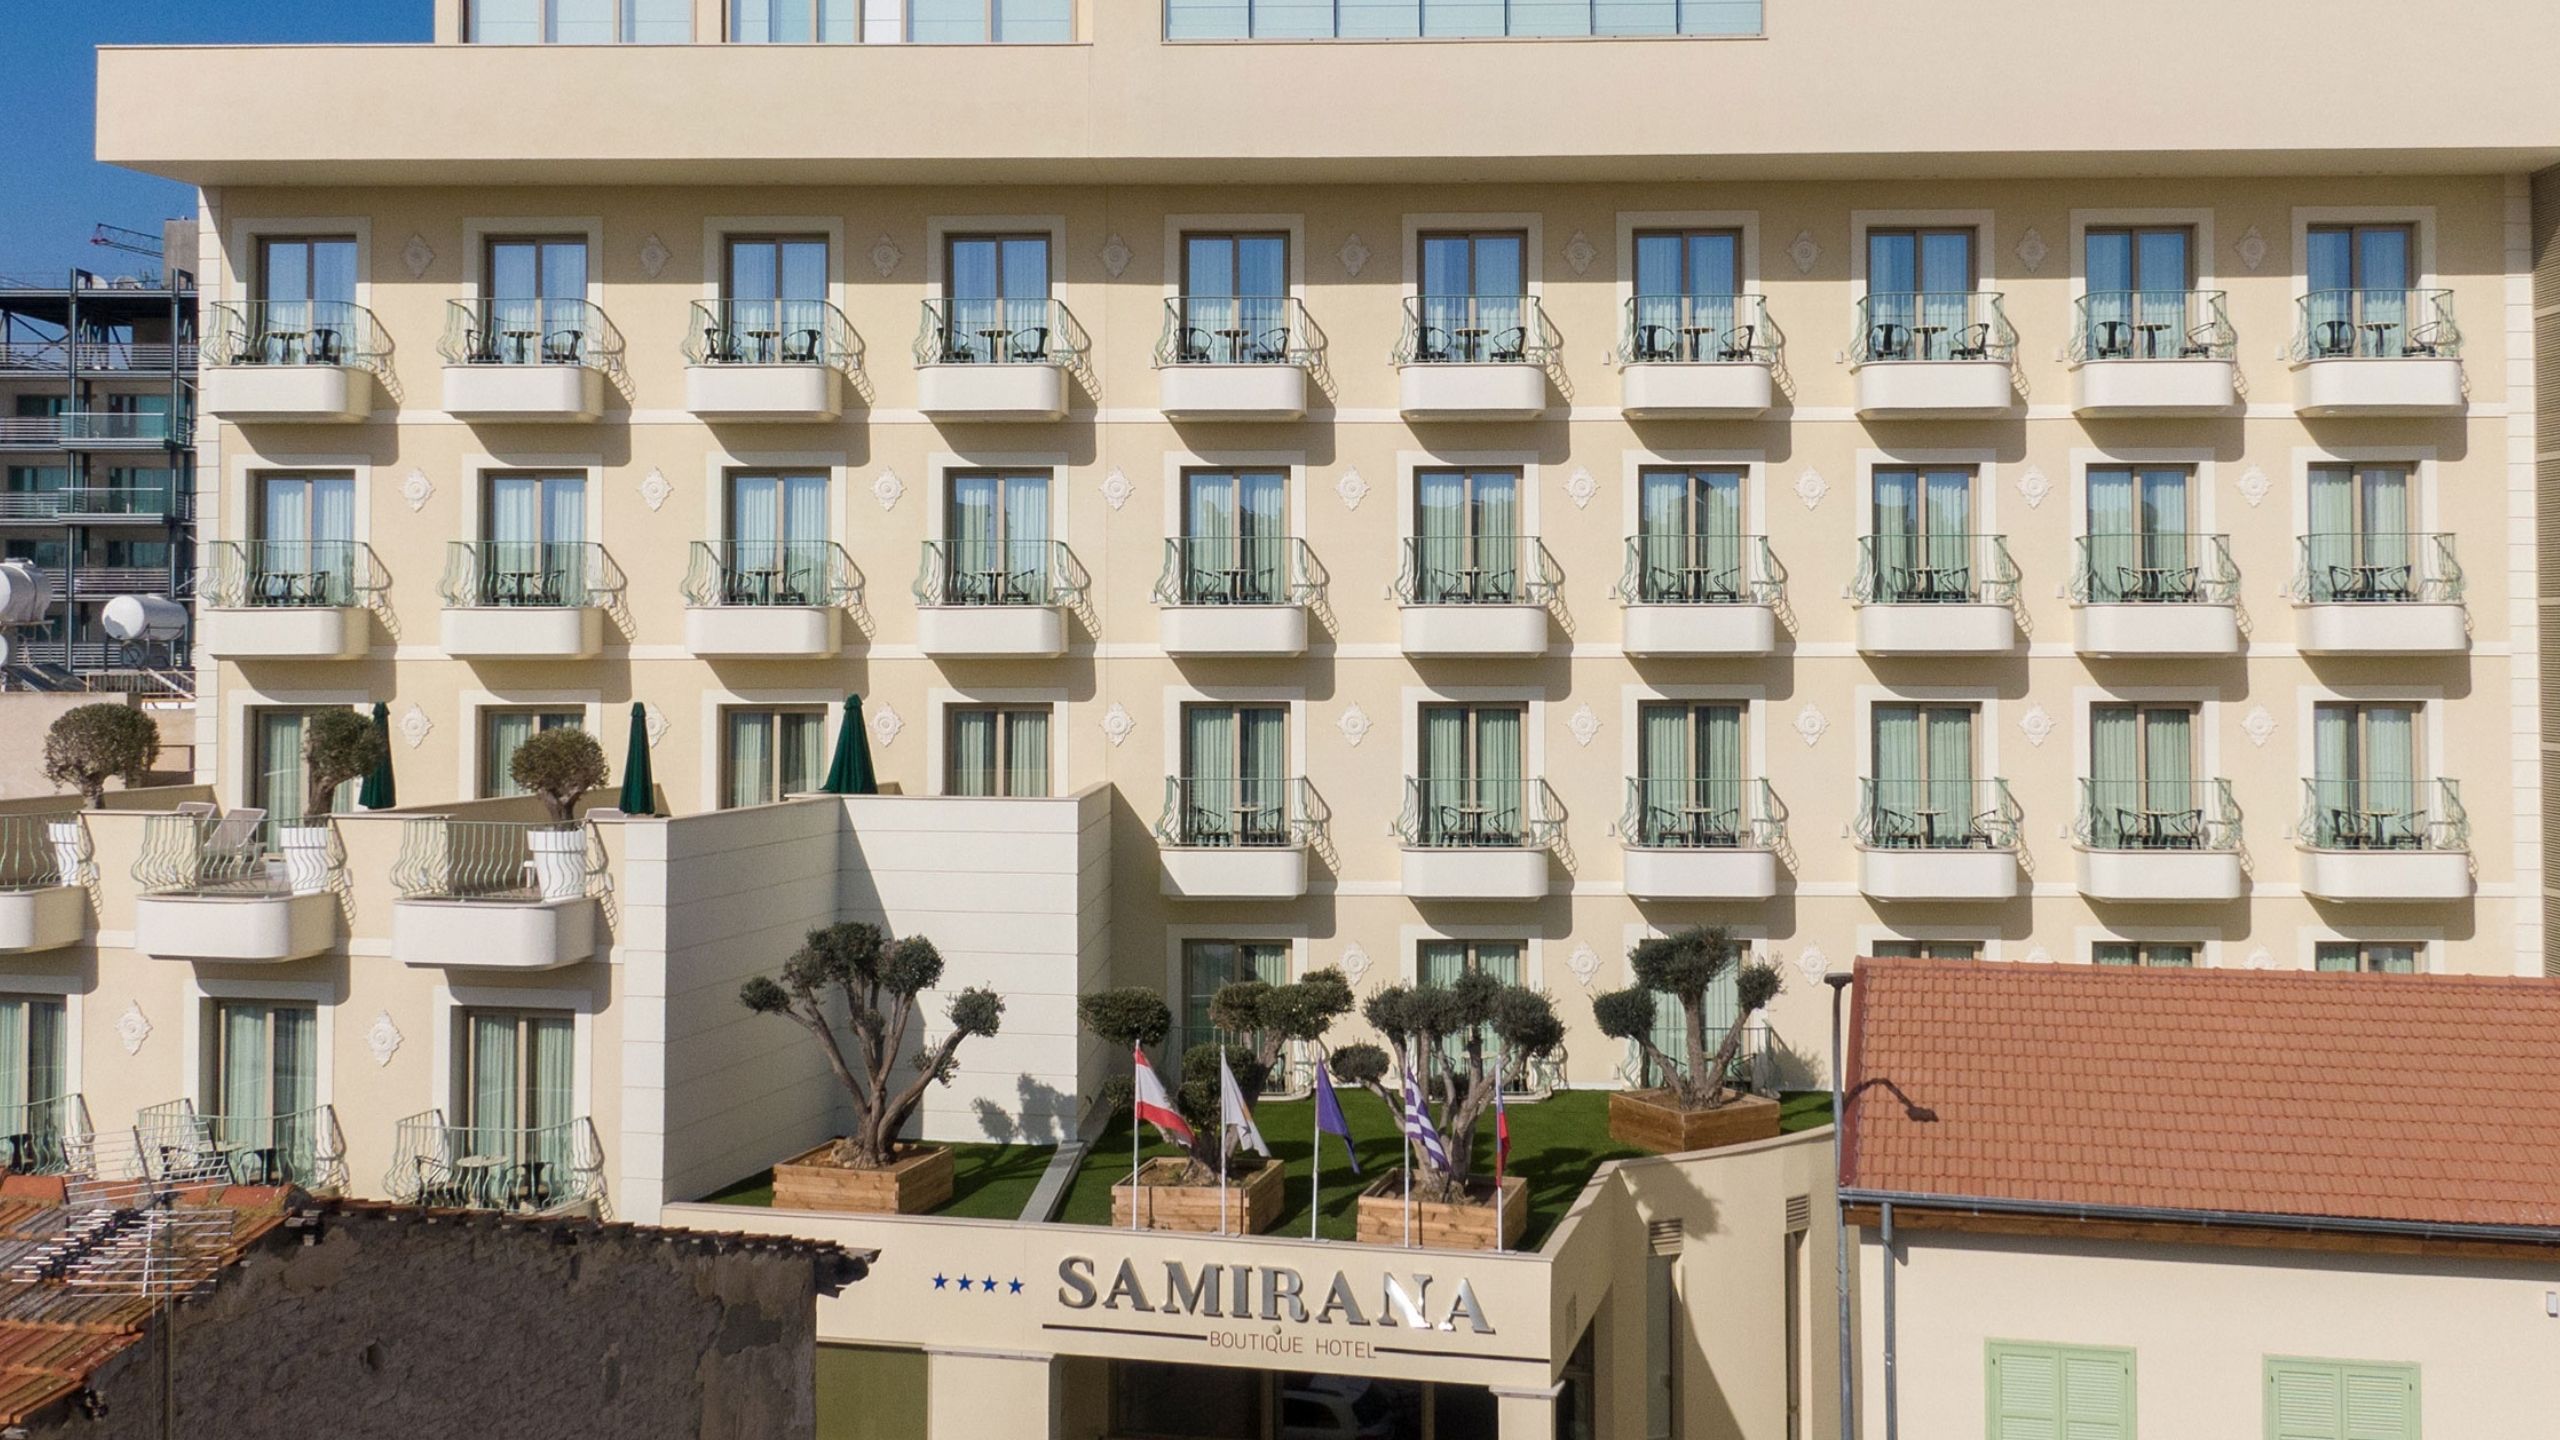  Samirana Boutique Hotel in Cyprus